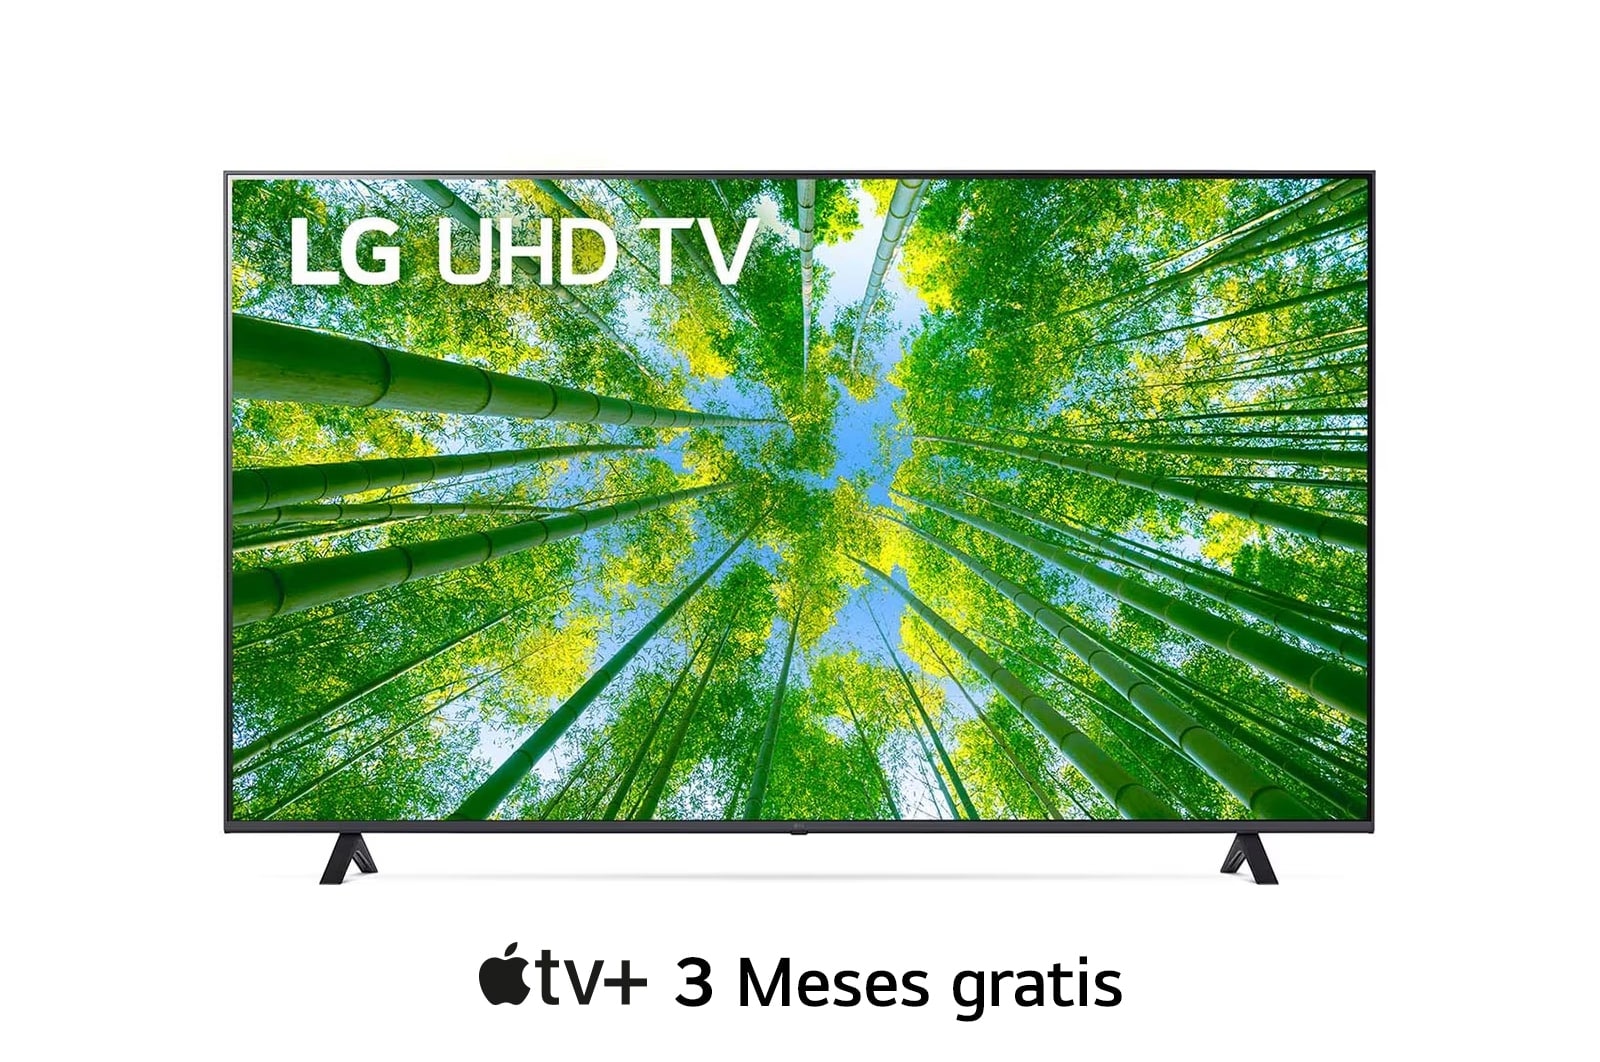 alt="LG UHD 60'' UQ7900 Smart TV con ThinQ AI (Inteligencia Artificial), Una vista frontal del televisor LG UHD con la imagen de relleno y el logotipo del producto encima, 60UQ7900PSB"